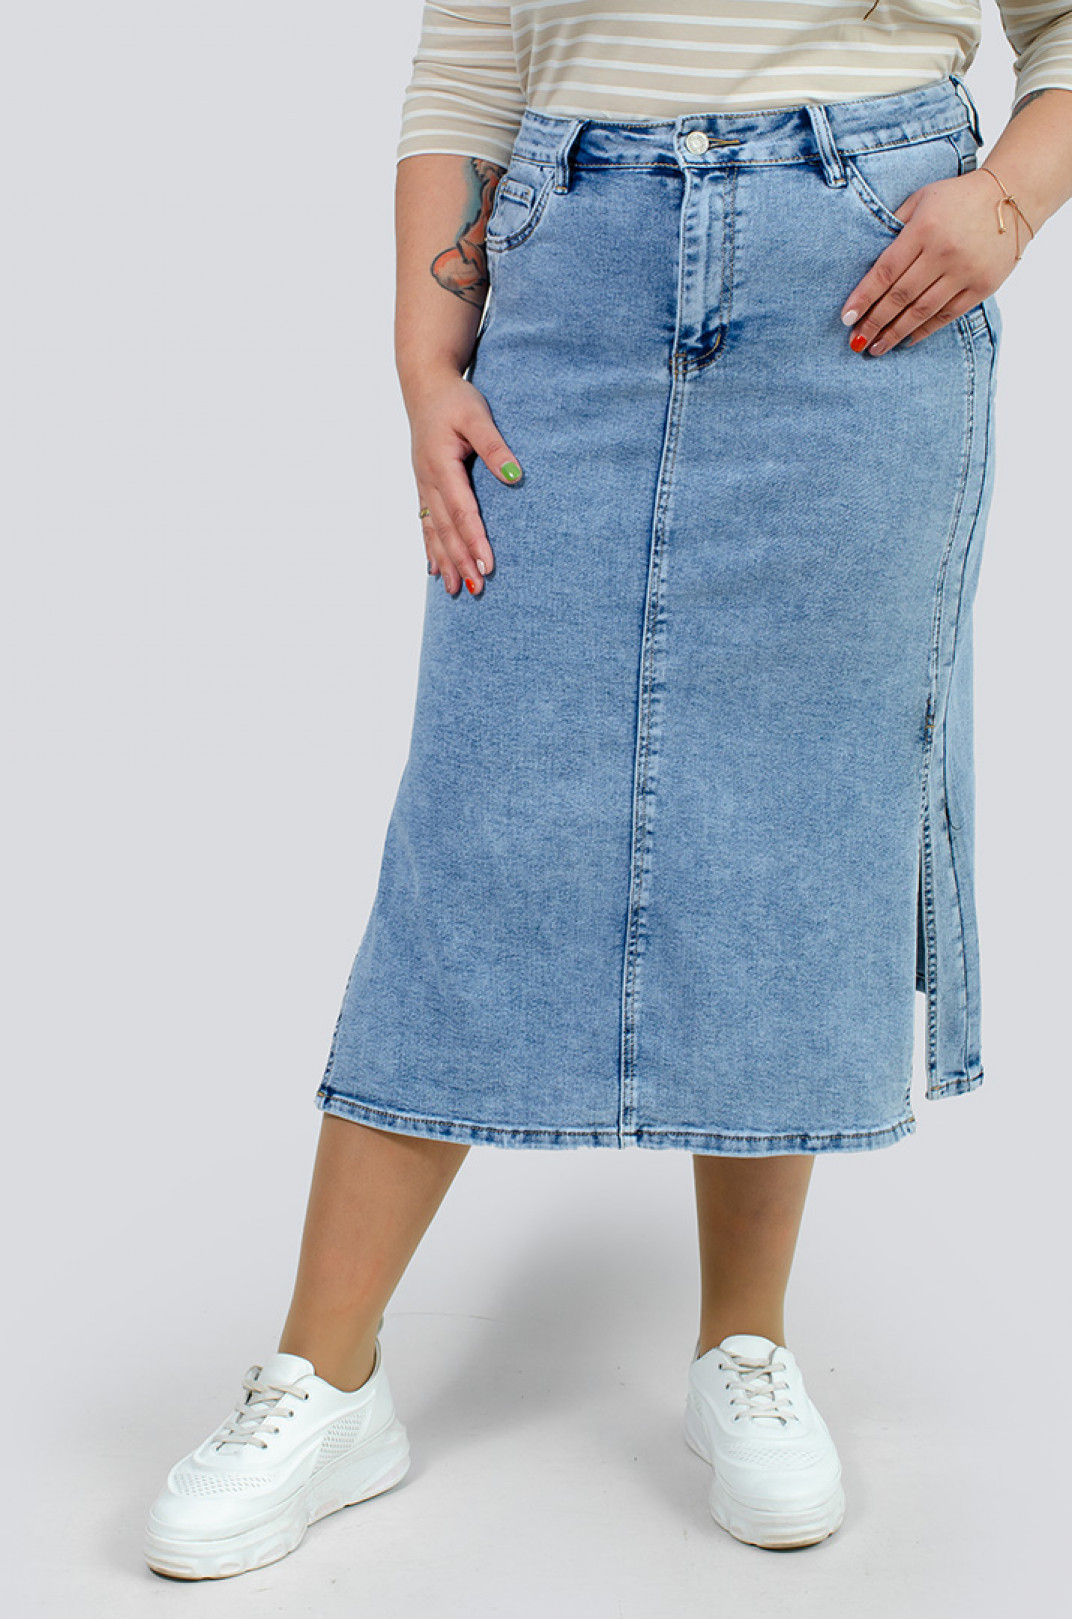 Джинсовая юбка миди с разрезами больших размеров